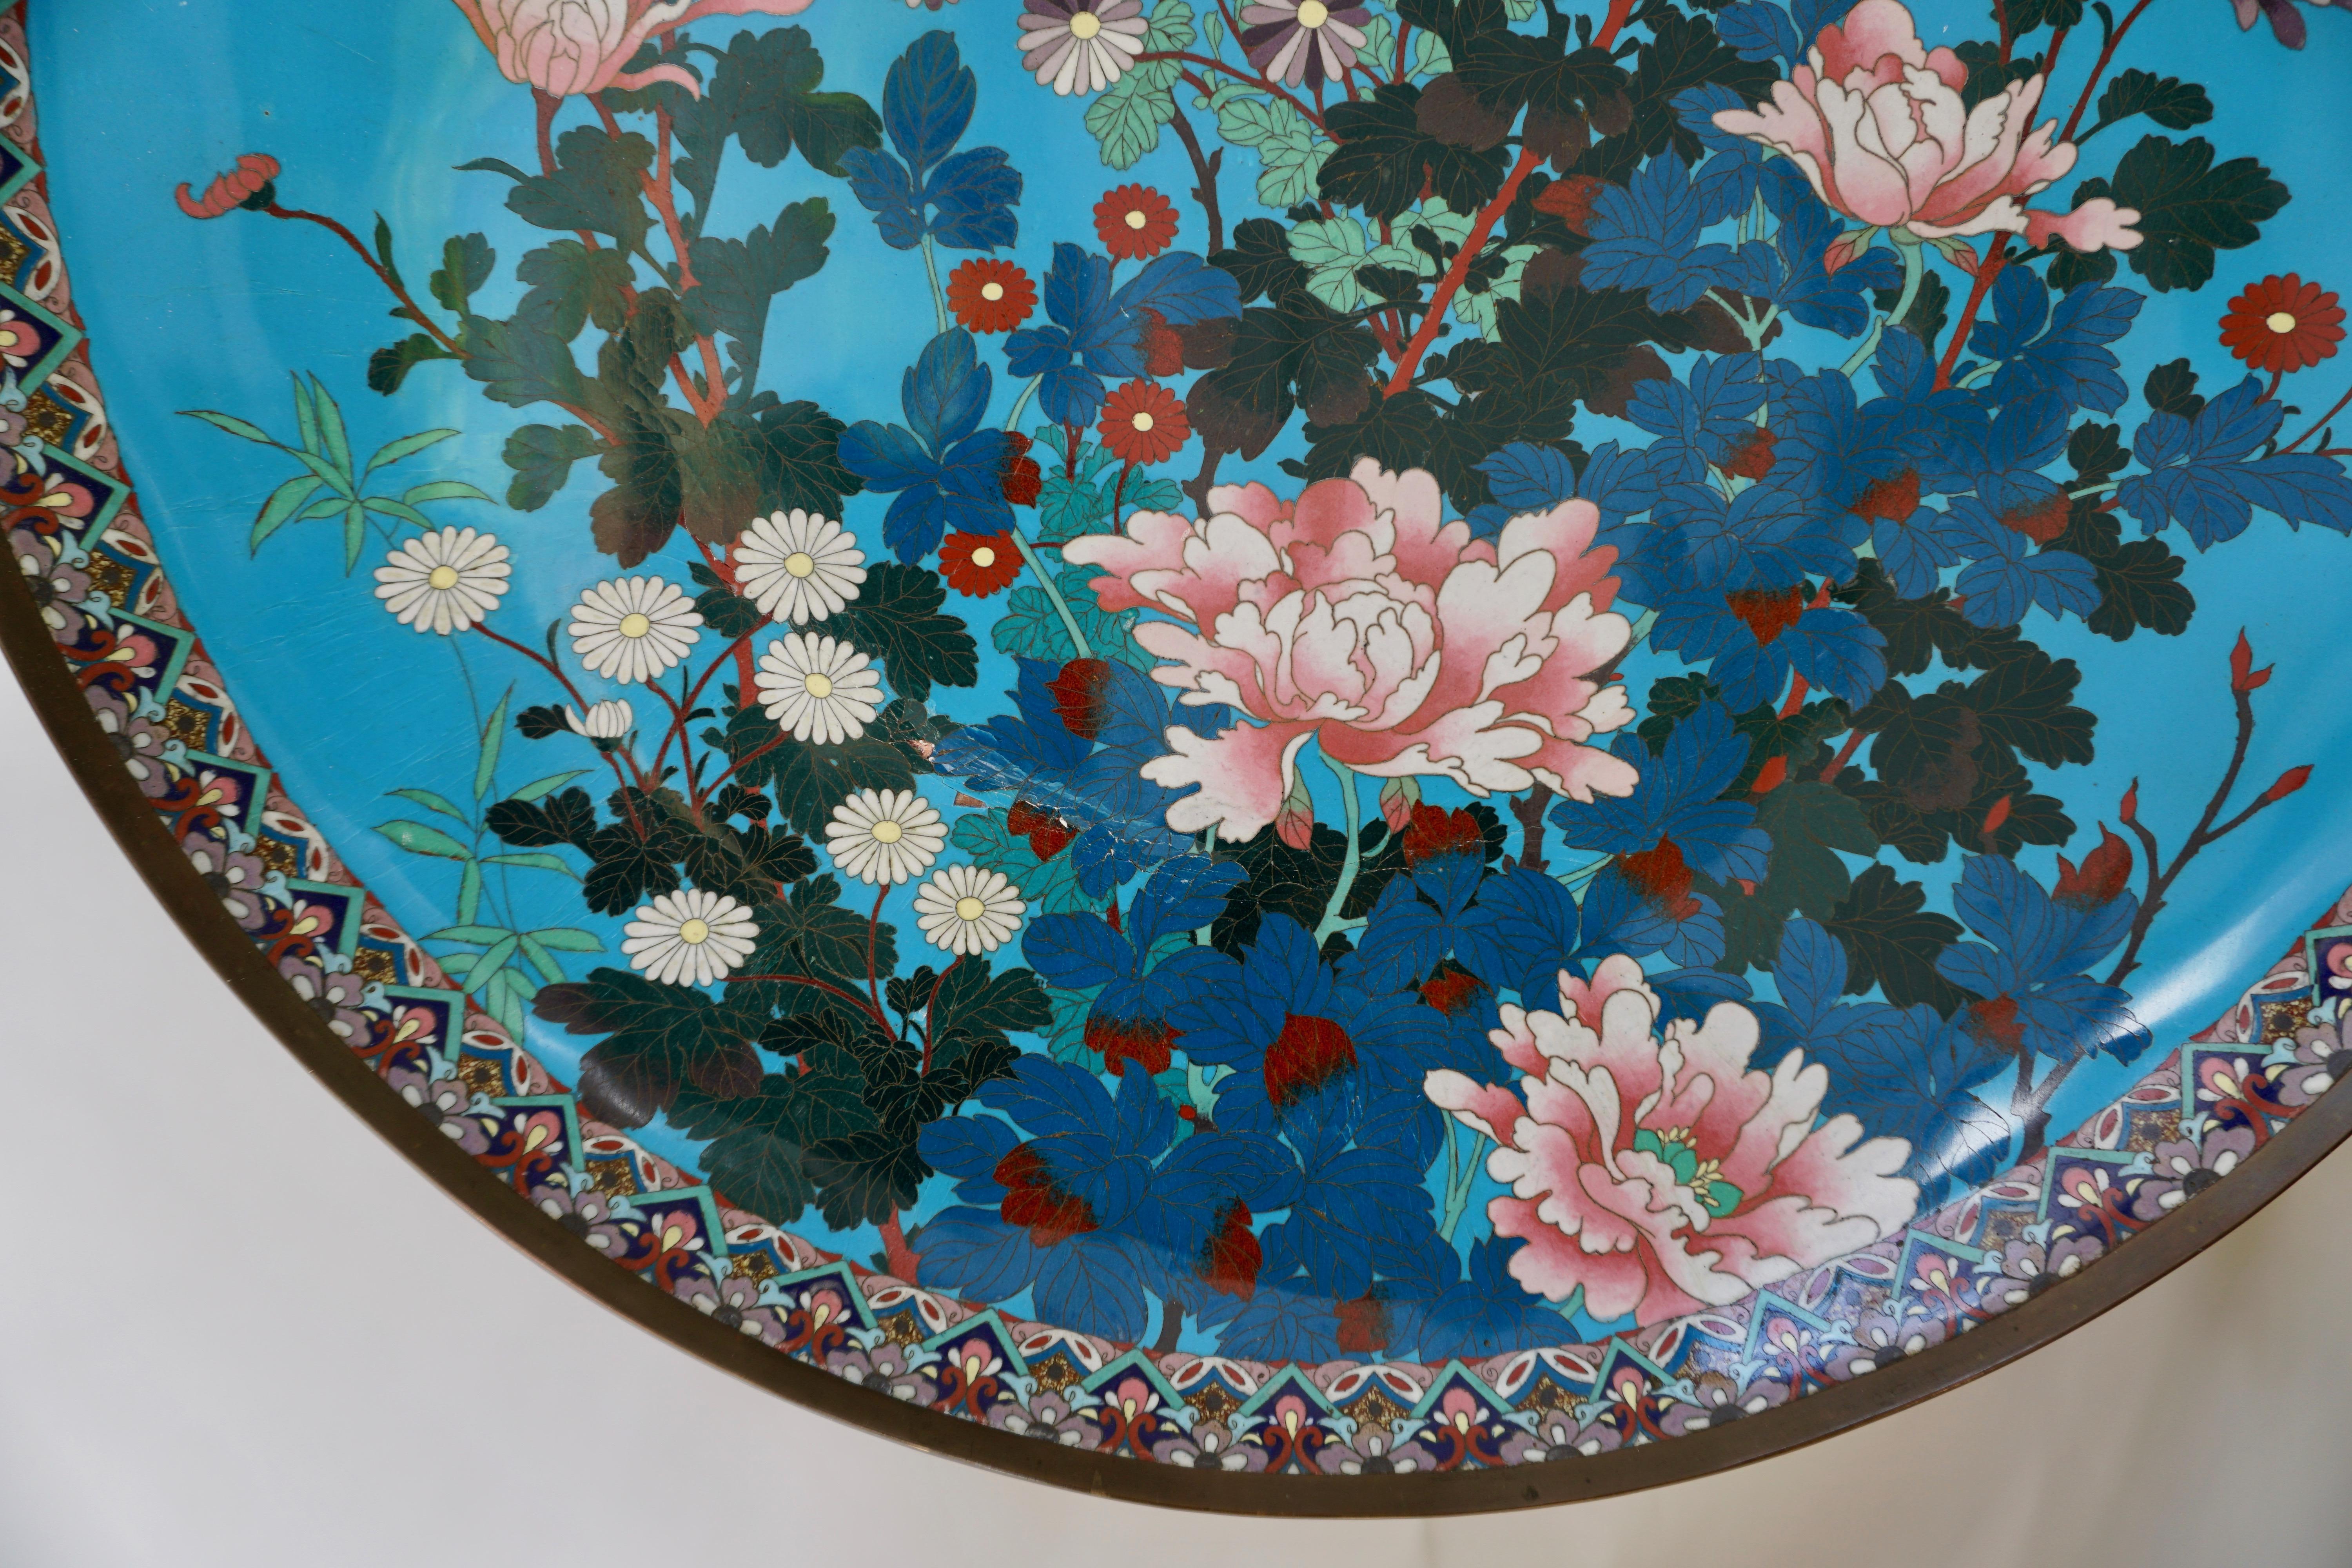 Cloissoné Quality Antique Japanese Cloisonné Plate or Wall Art Decoration